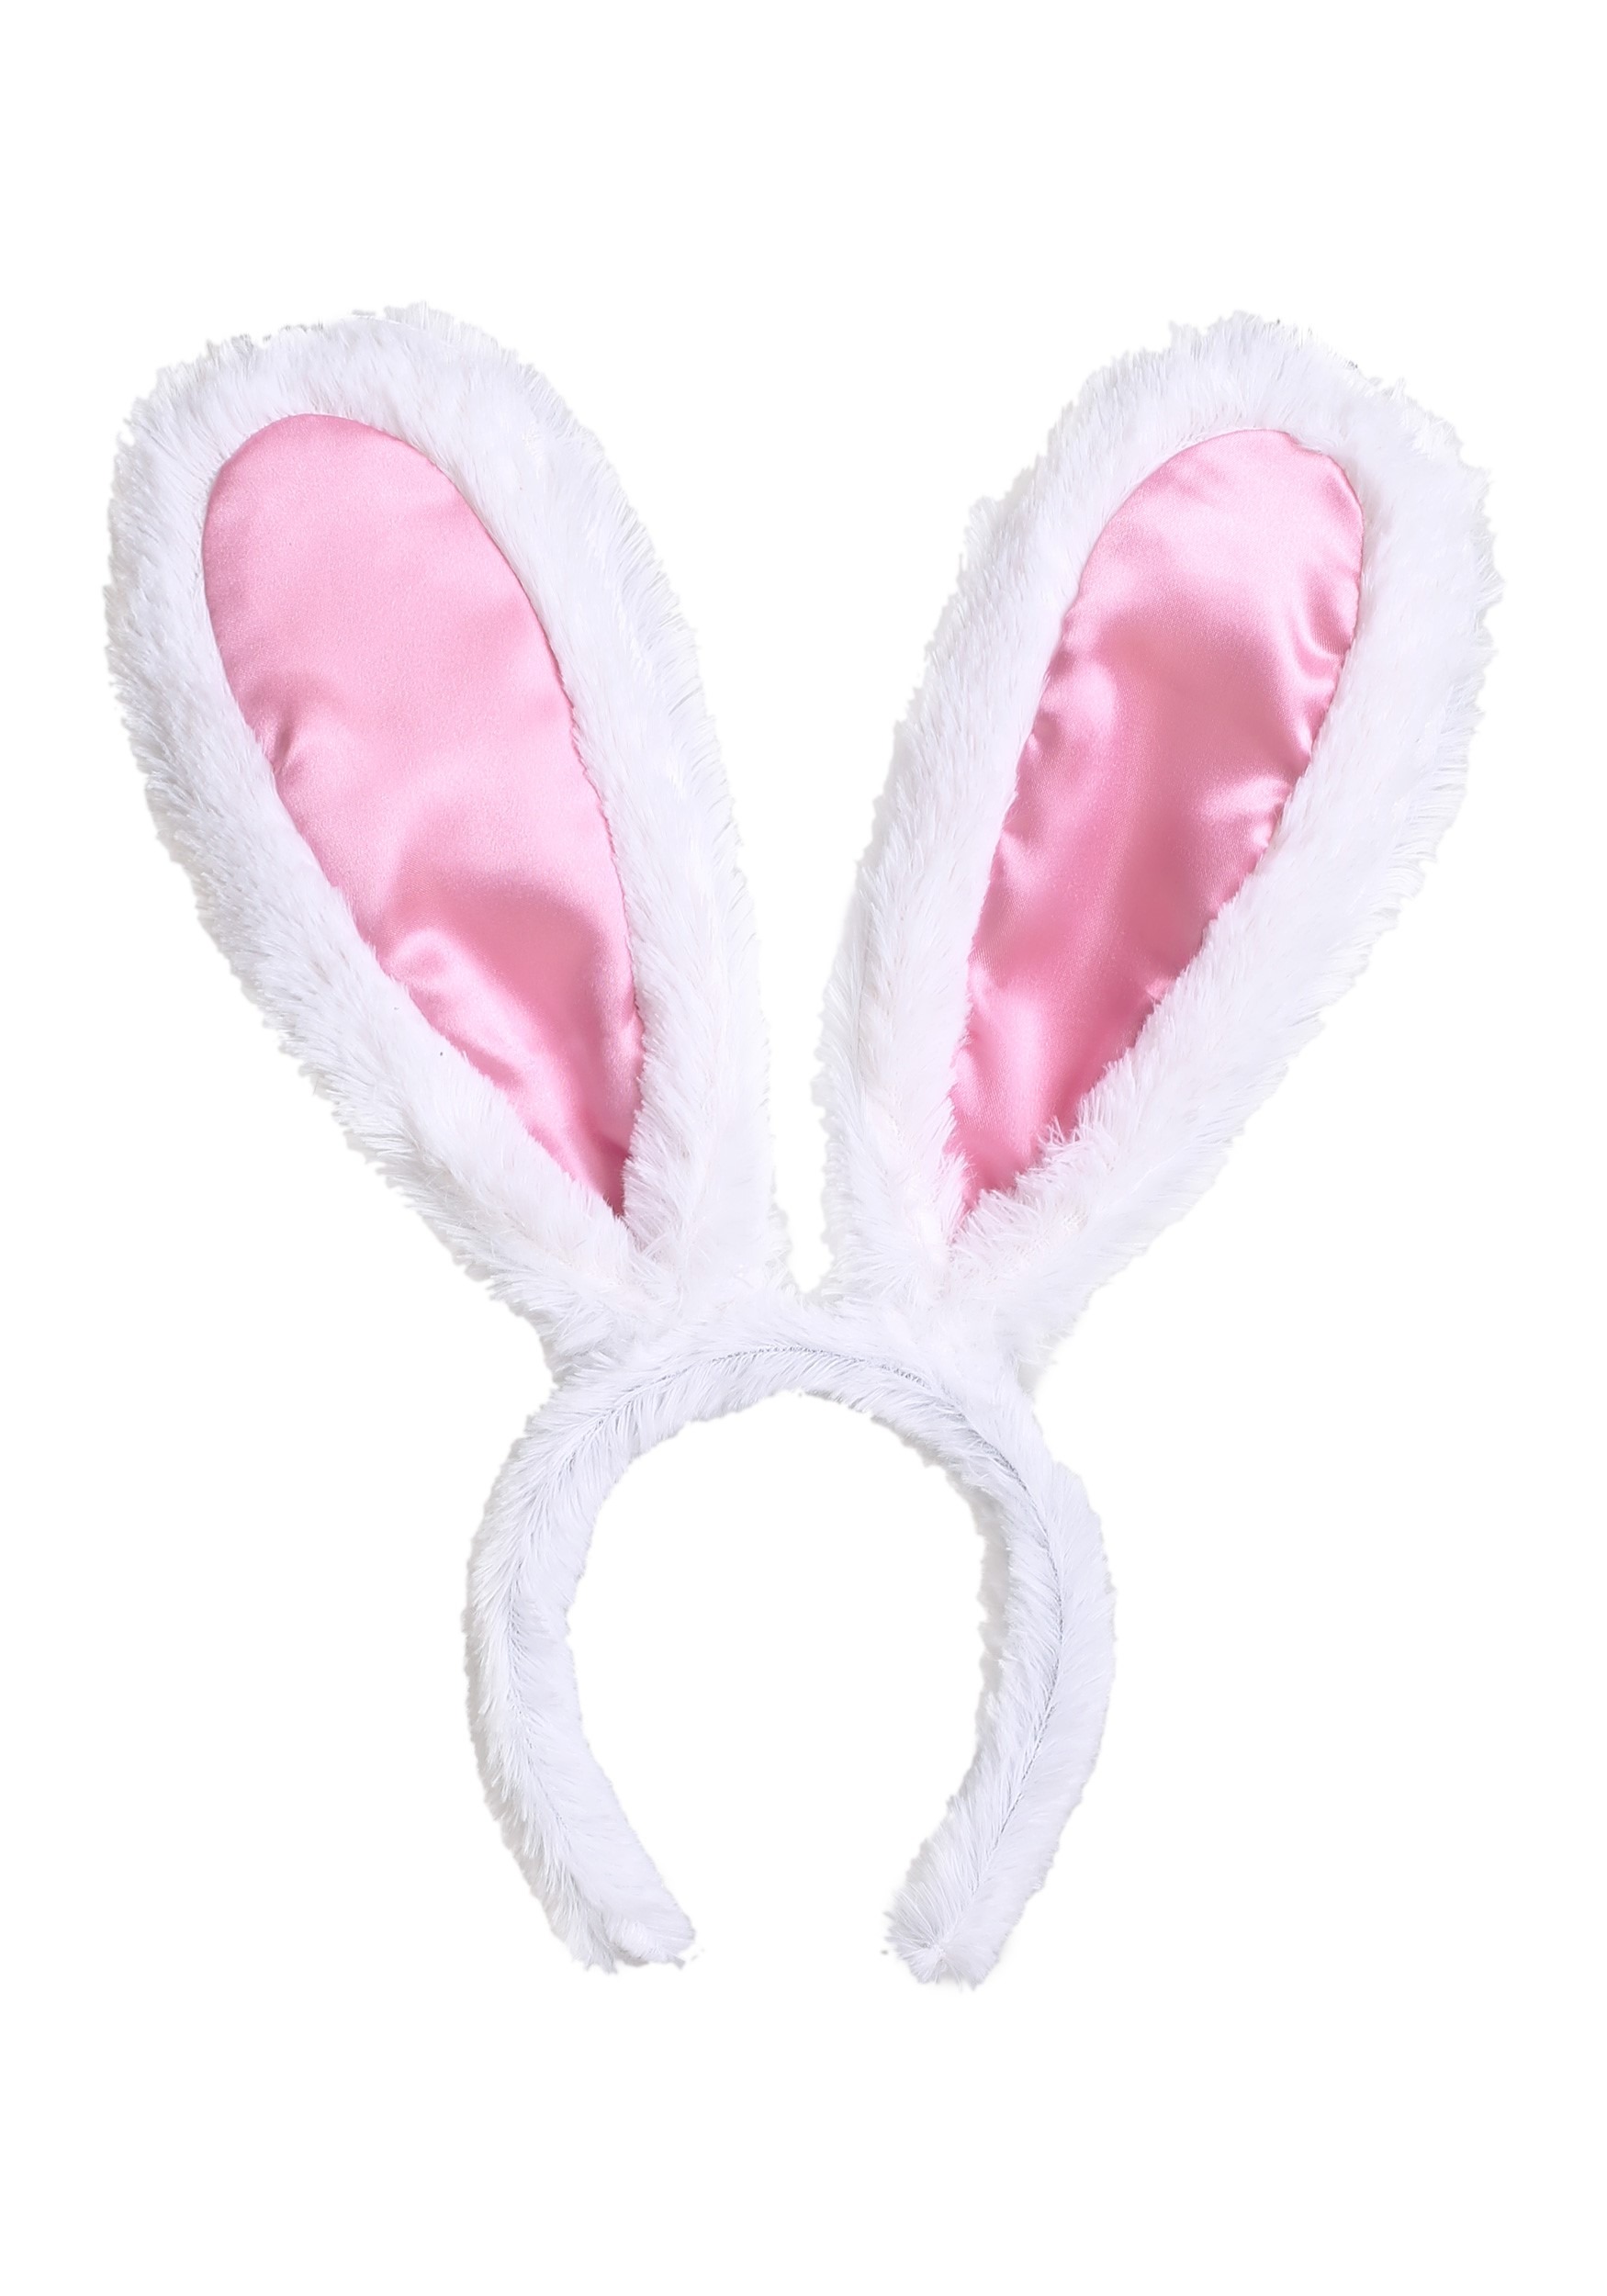 bunny-ears-headband-elle-woods-bunny-costume